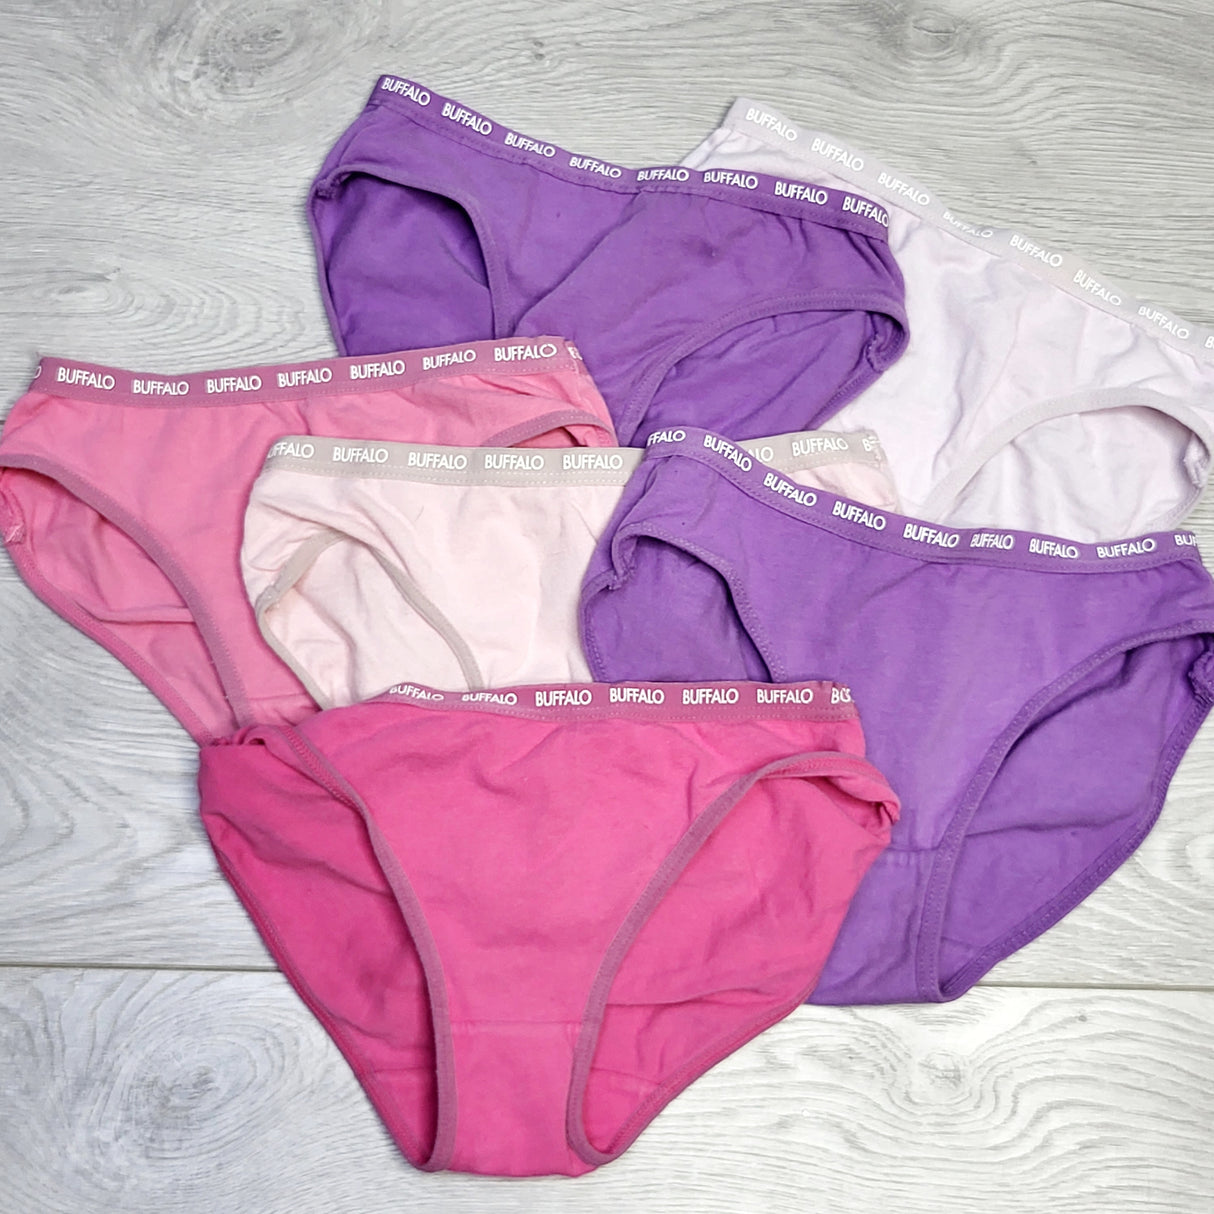 SPLT2 - Buffalo 6pc underwear, size 6/7